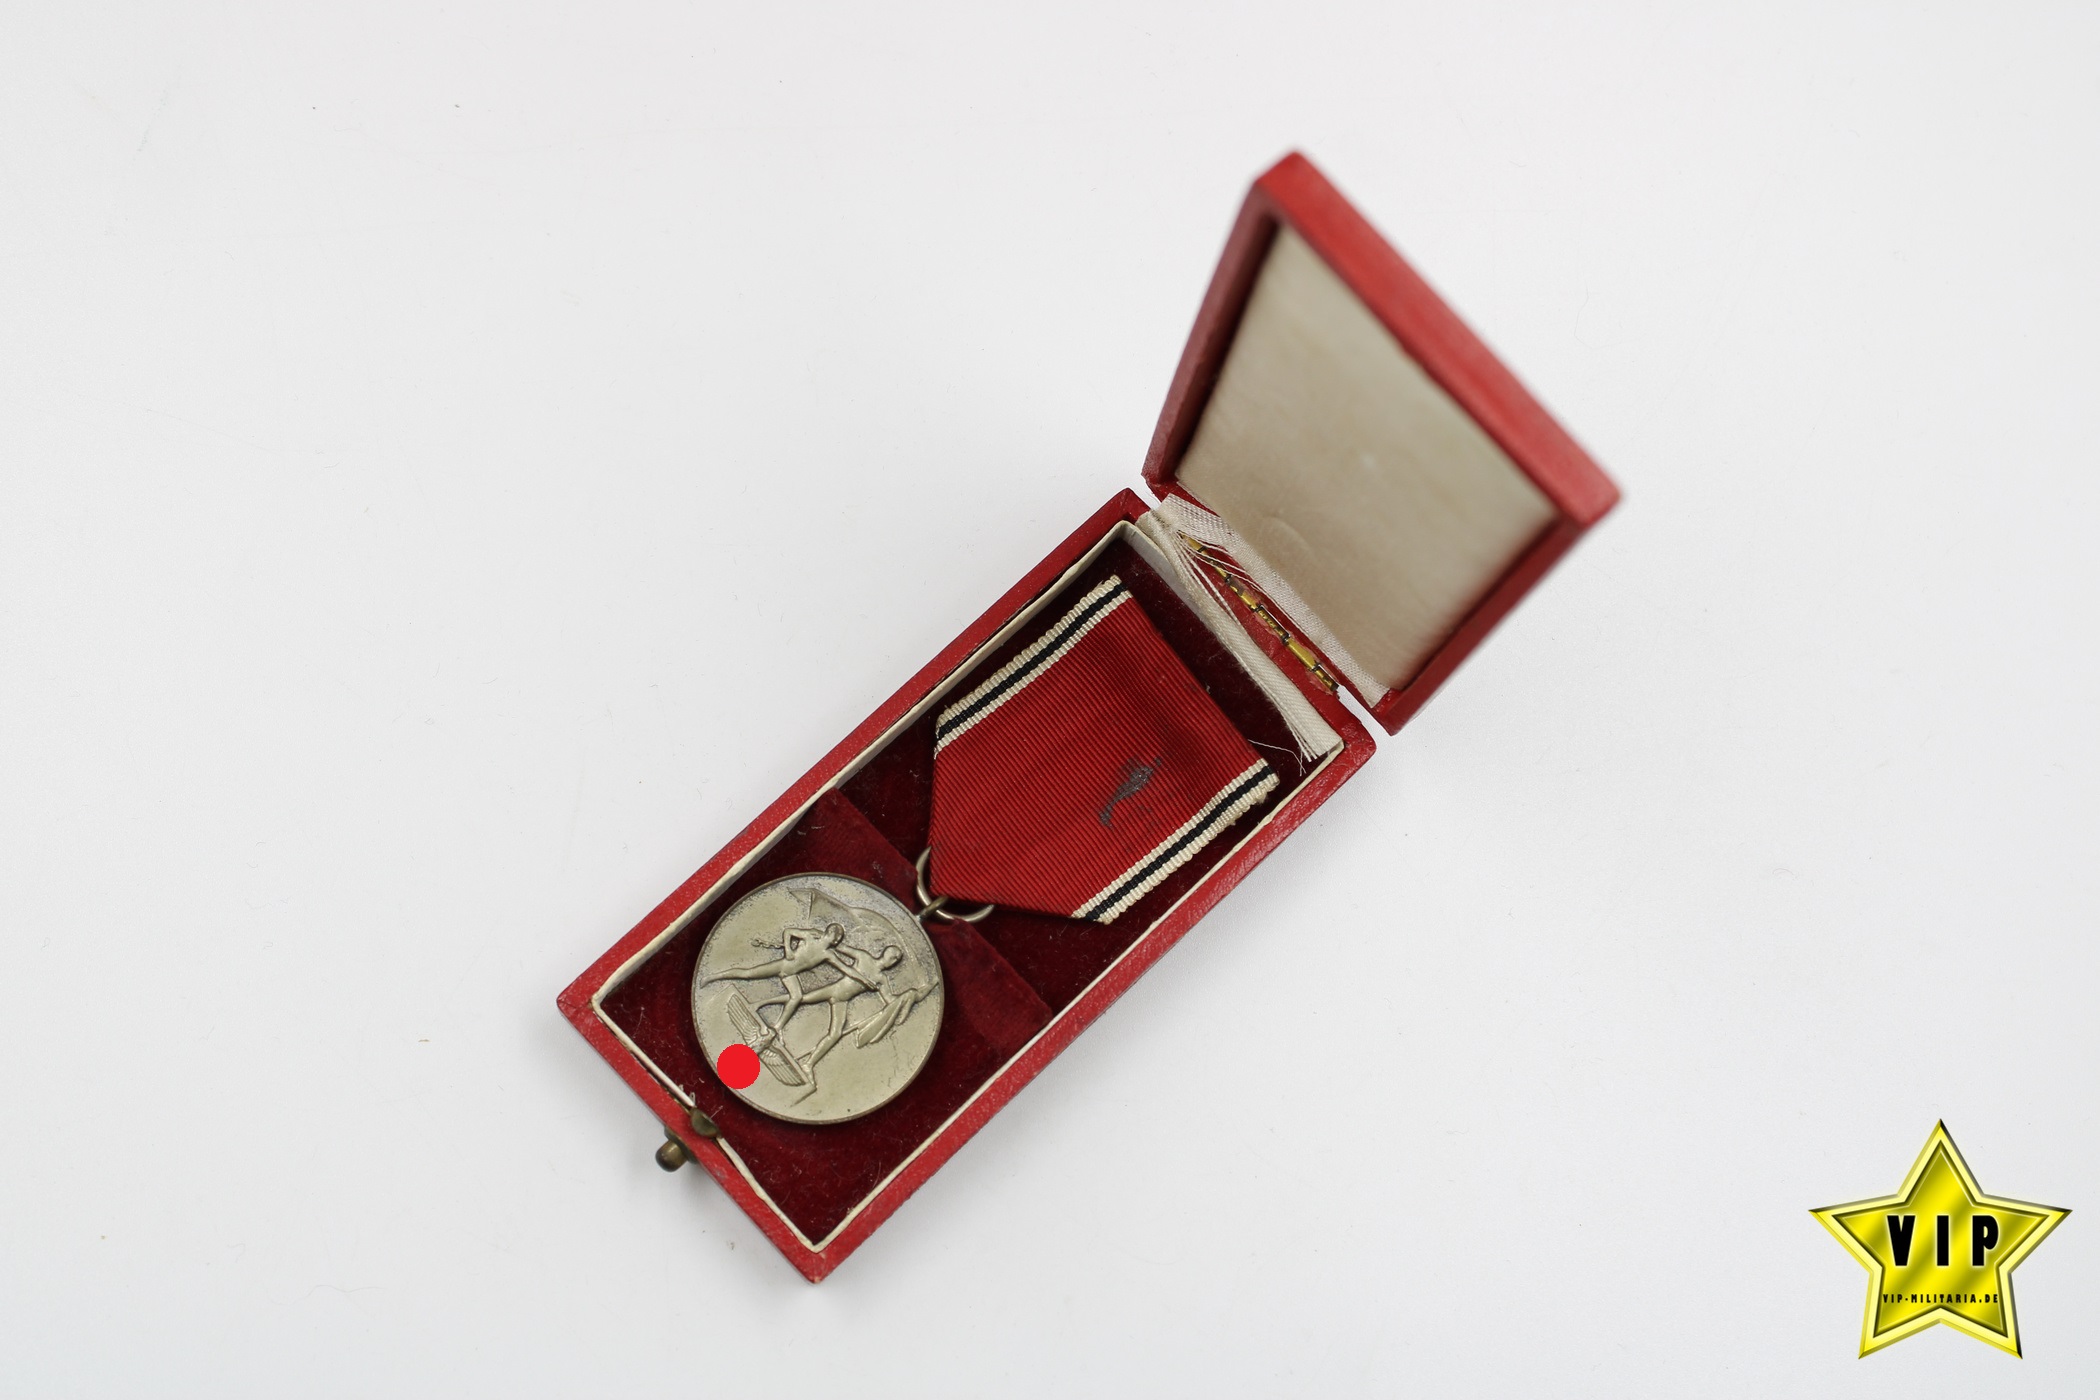 Anschluss Medaille 13. März 1938 Österreich im Verleihungsetui 